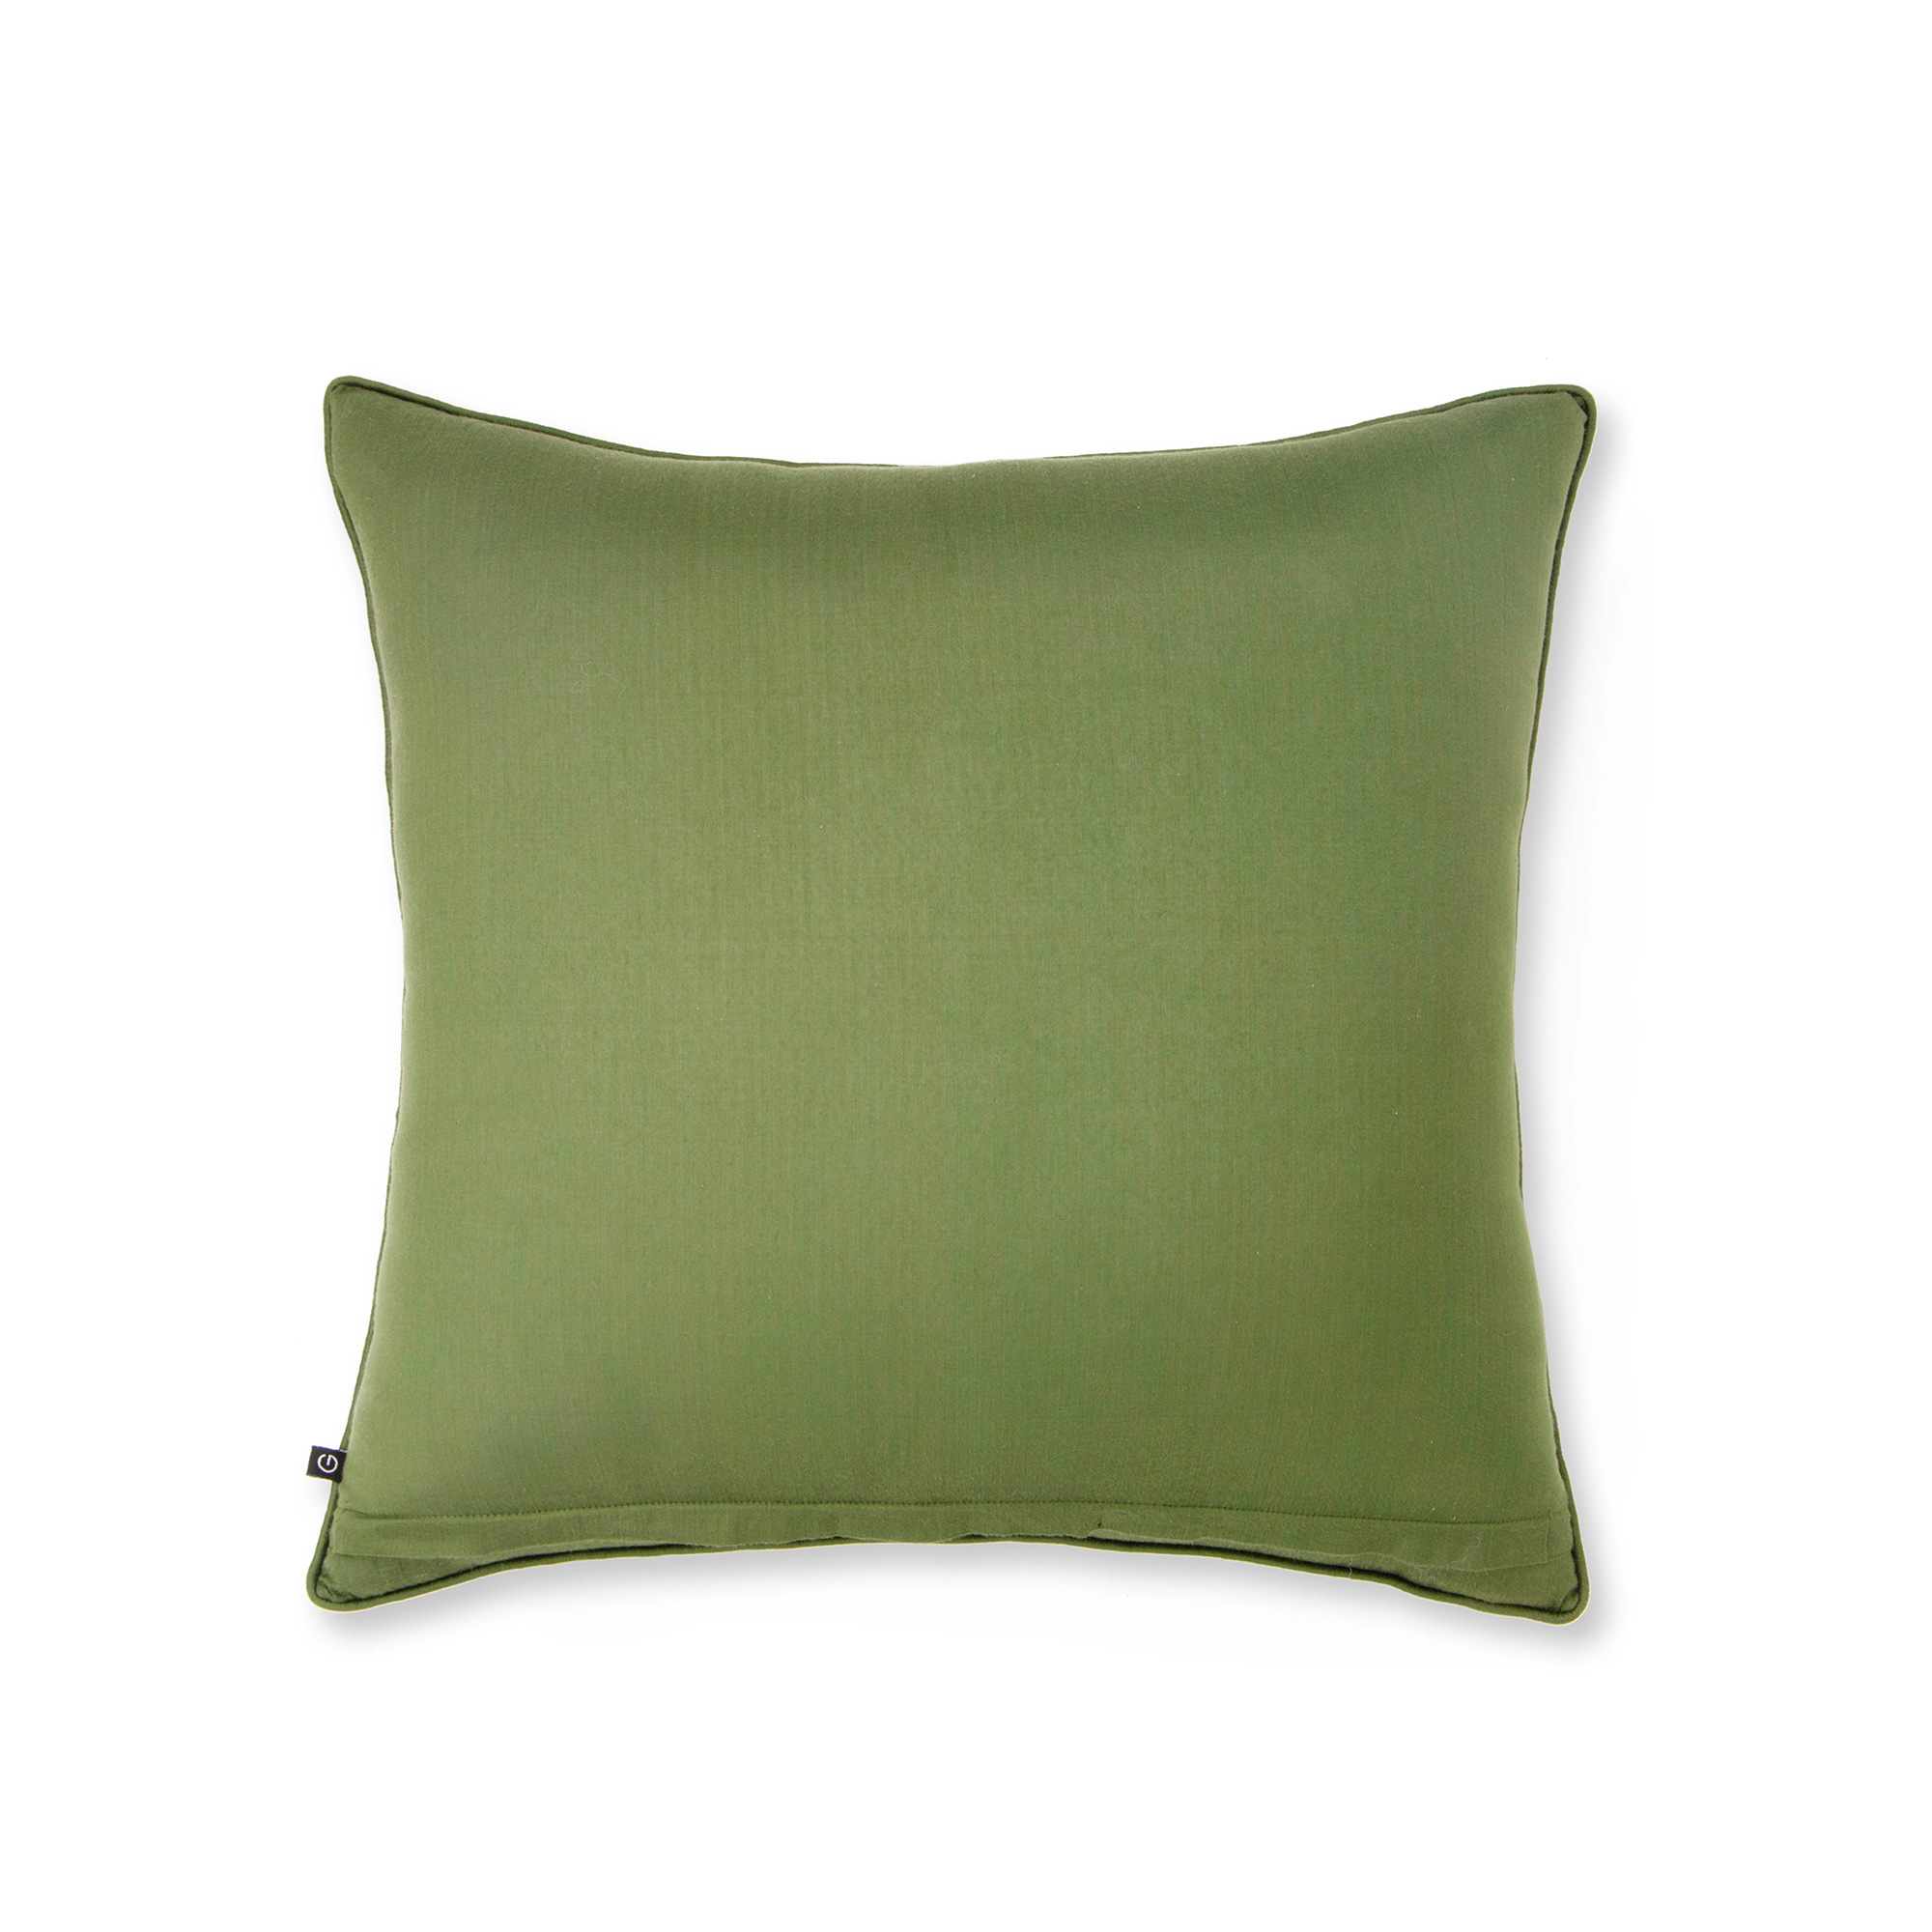 Fern Hill - First Blush Cushion Cover